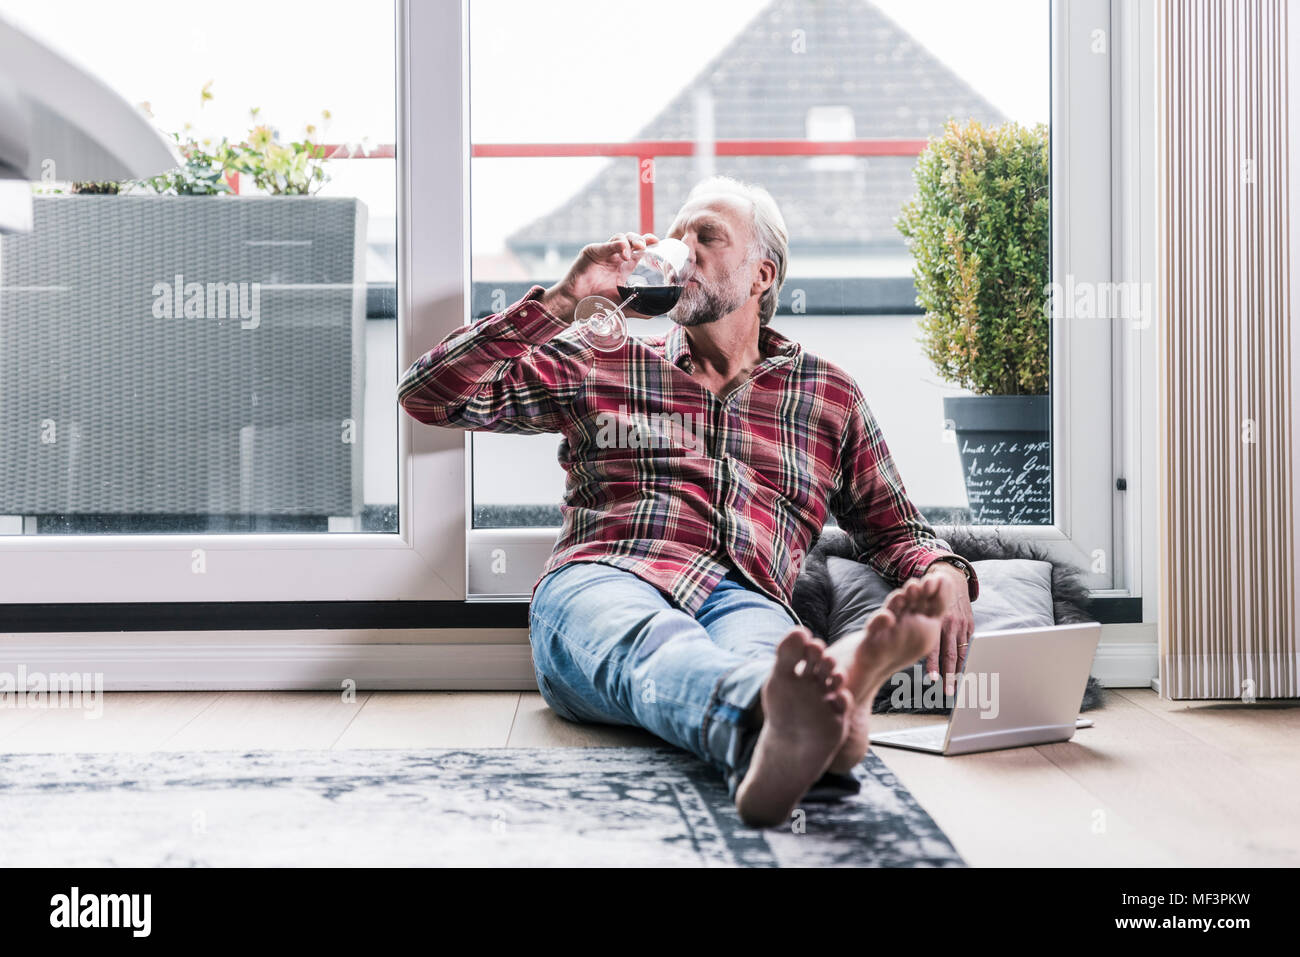 Relajante del Hombre Descalzo en el piso en casa bebiendo una copa de vino tinto Foto de stock